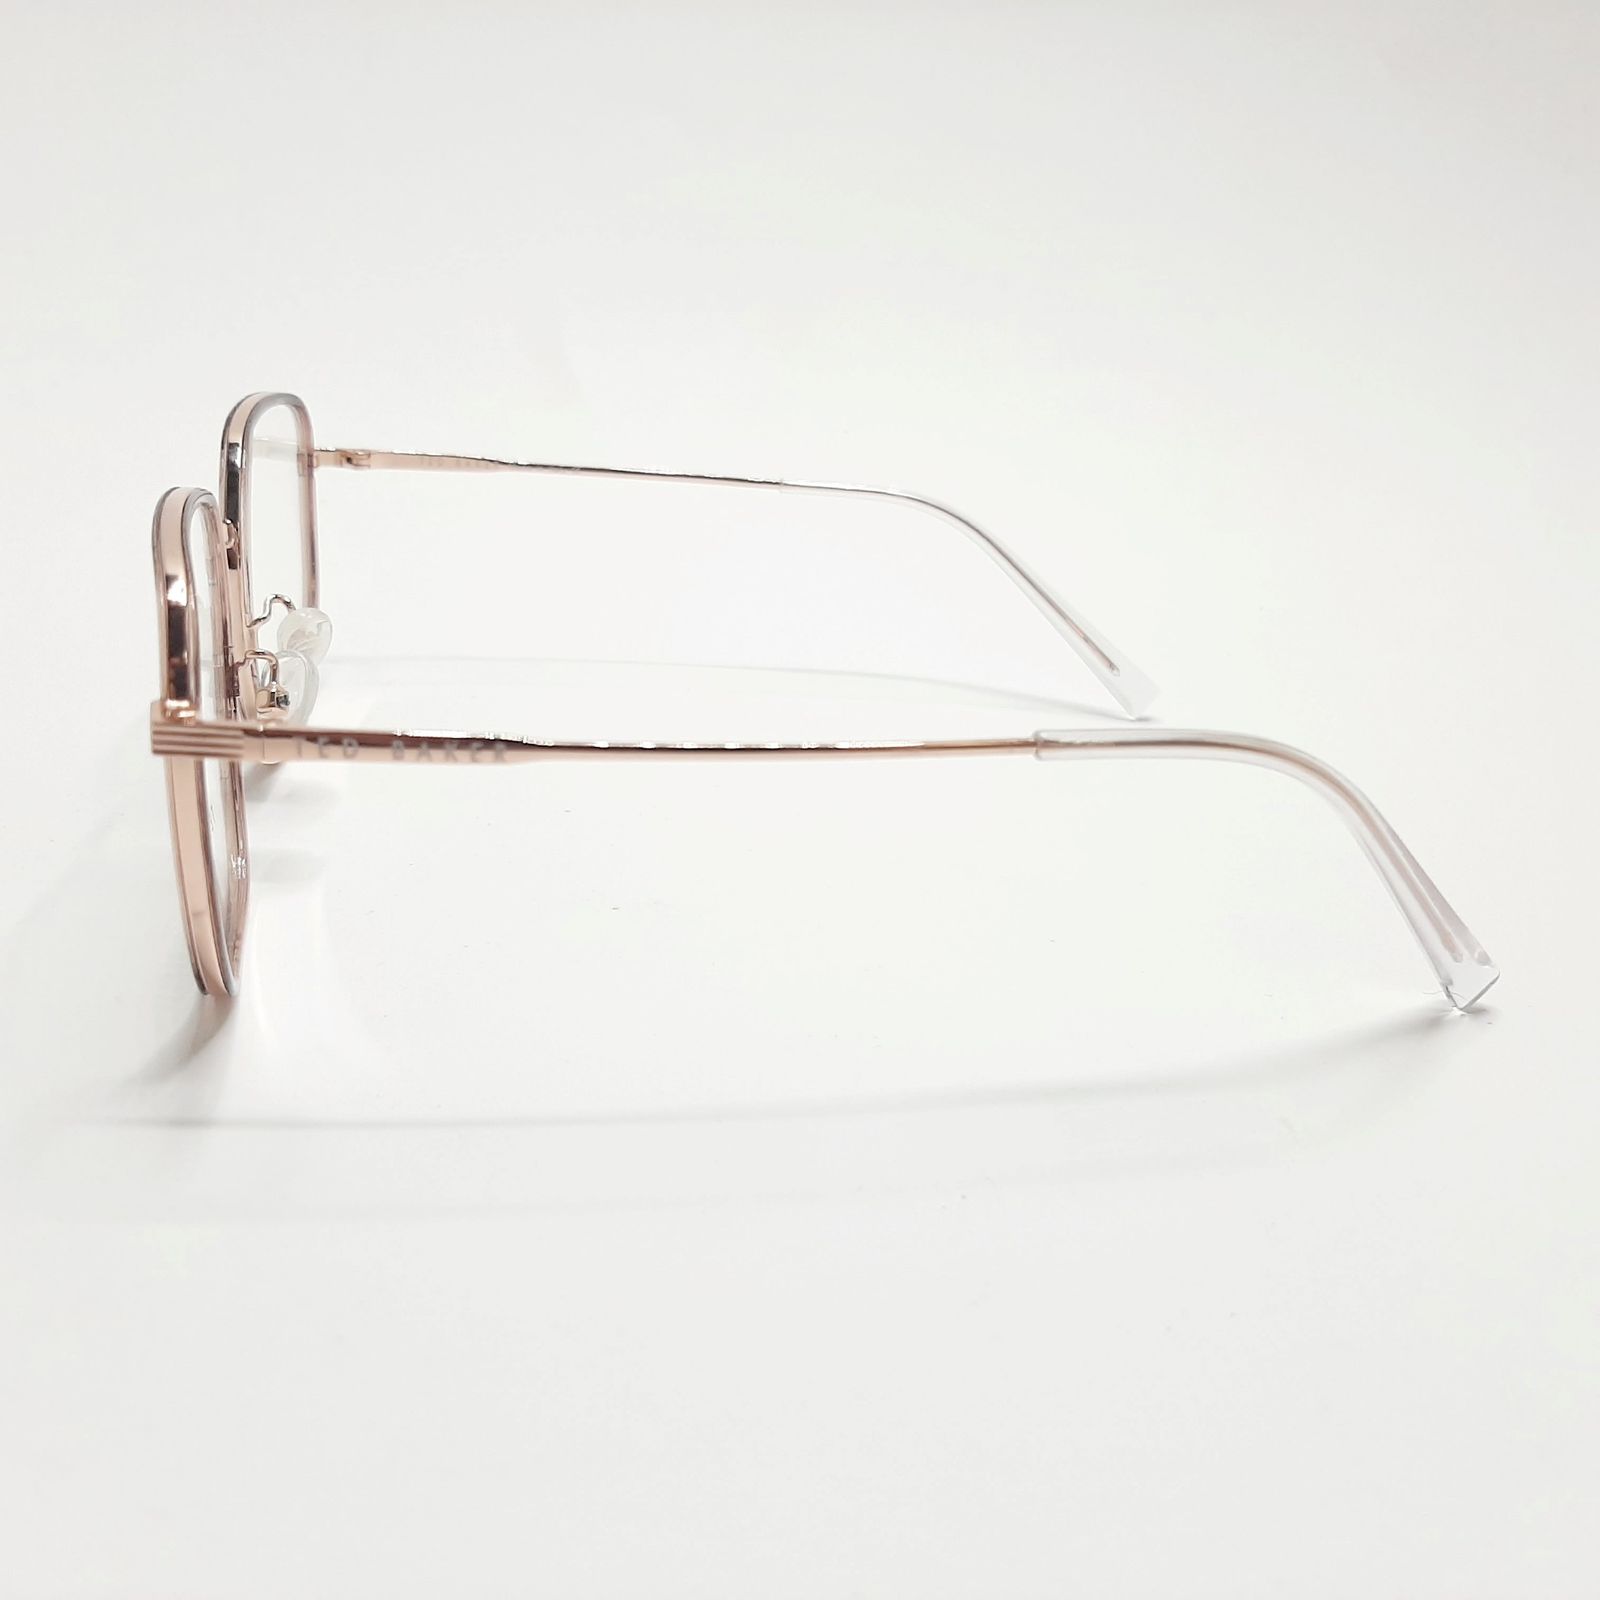 فریم عینک طبی تد بیکر مدل TB55082c3 -  - 5